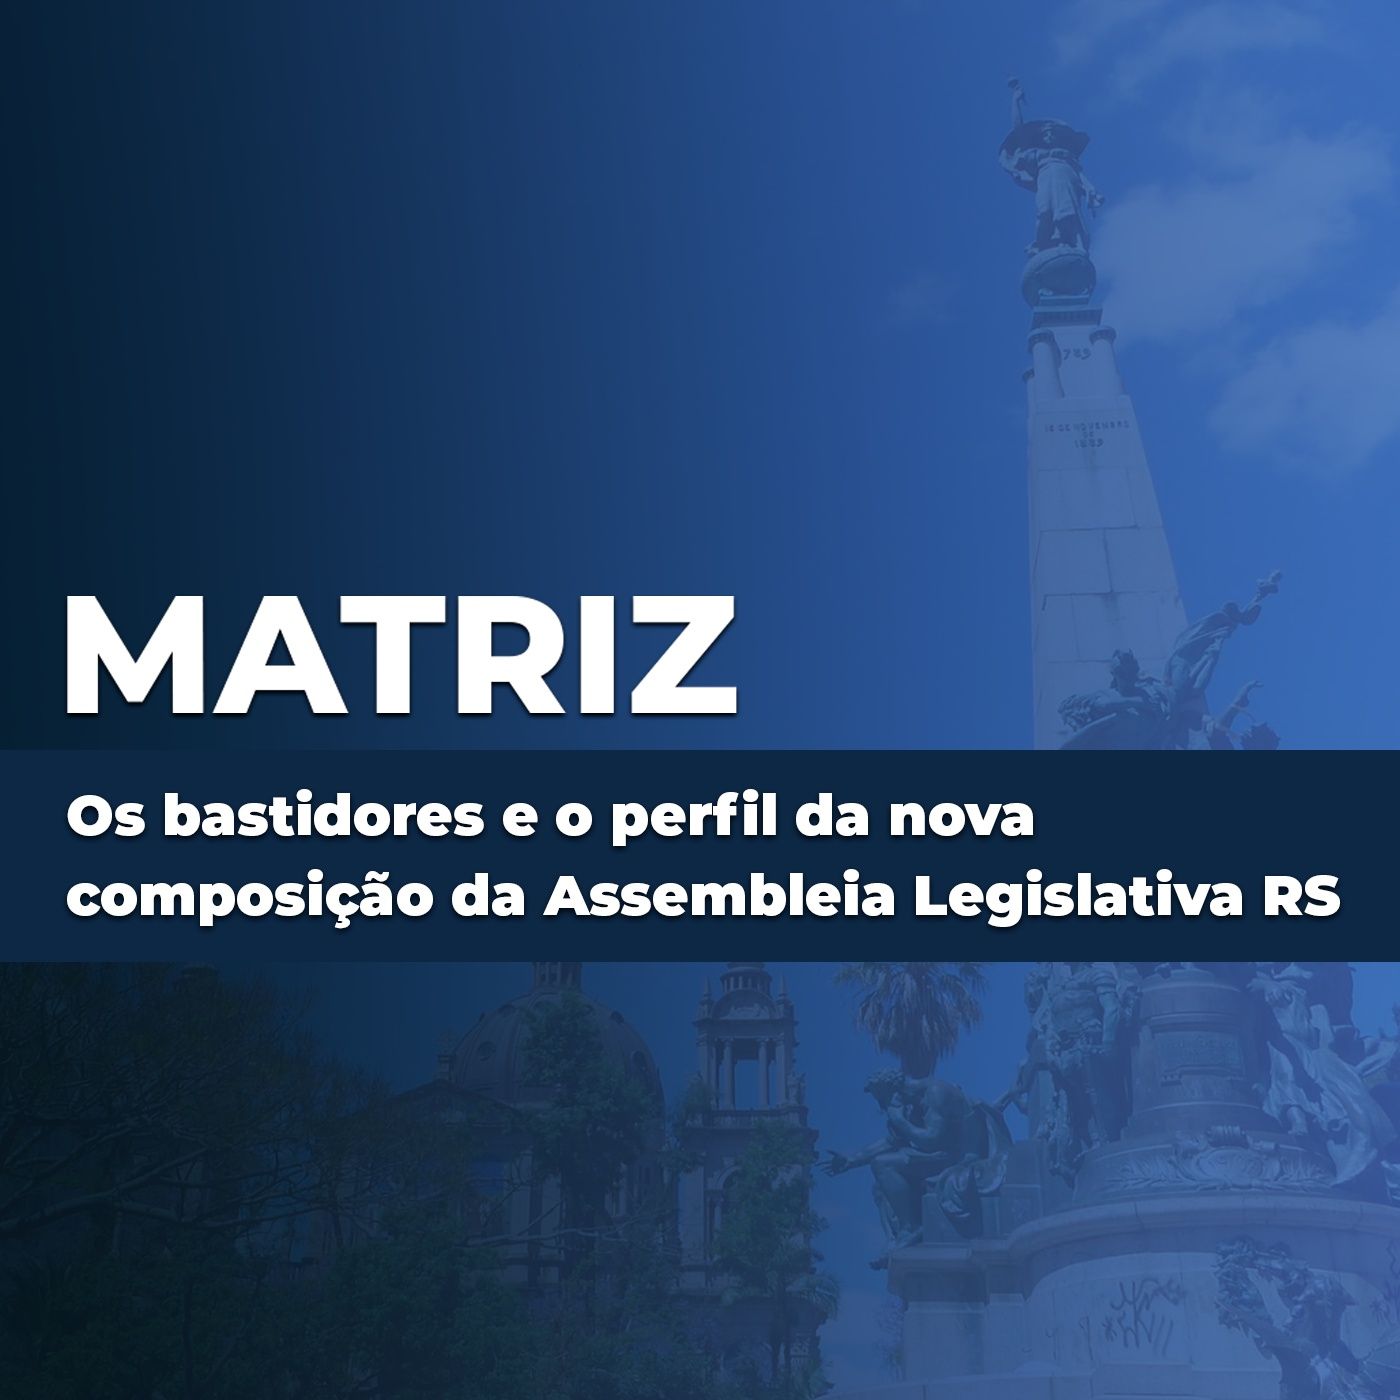 Os bastidores e o perfil da nova composição da Assembleia Legislativa do RS